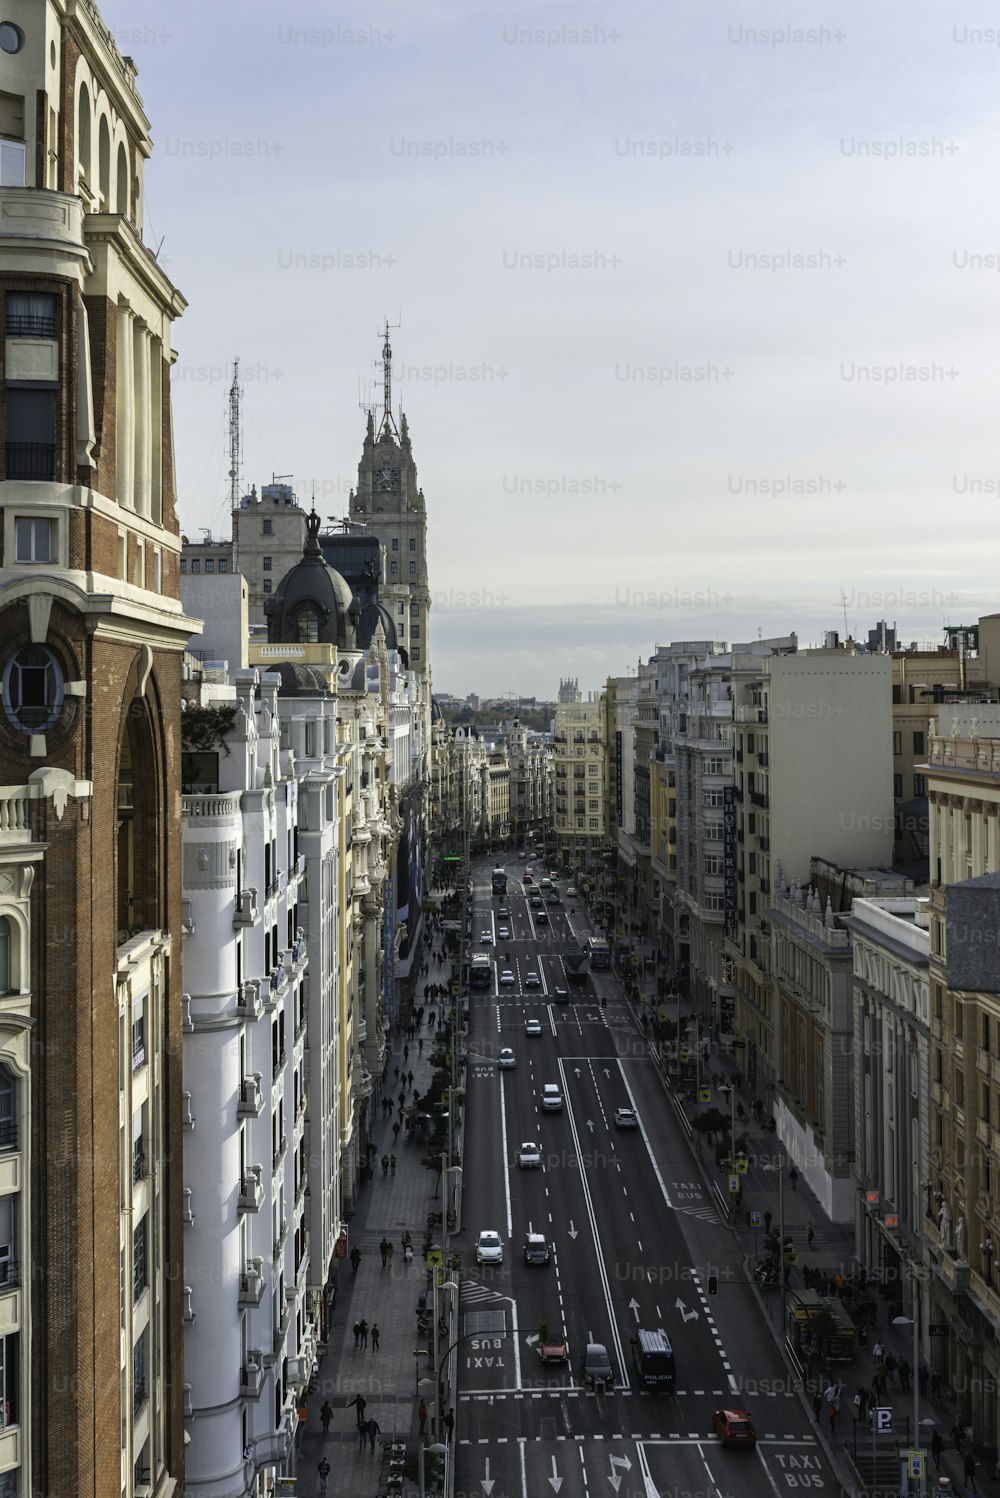 Veduta aerea della Gran Vía e dello skyline di Madrid da piazza Callao in una mattina d'autunno, con l'edificio Telefónica e altri punti di riferimento da riconoscere sullo sfondo.